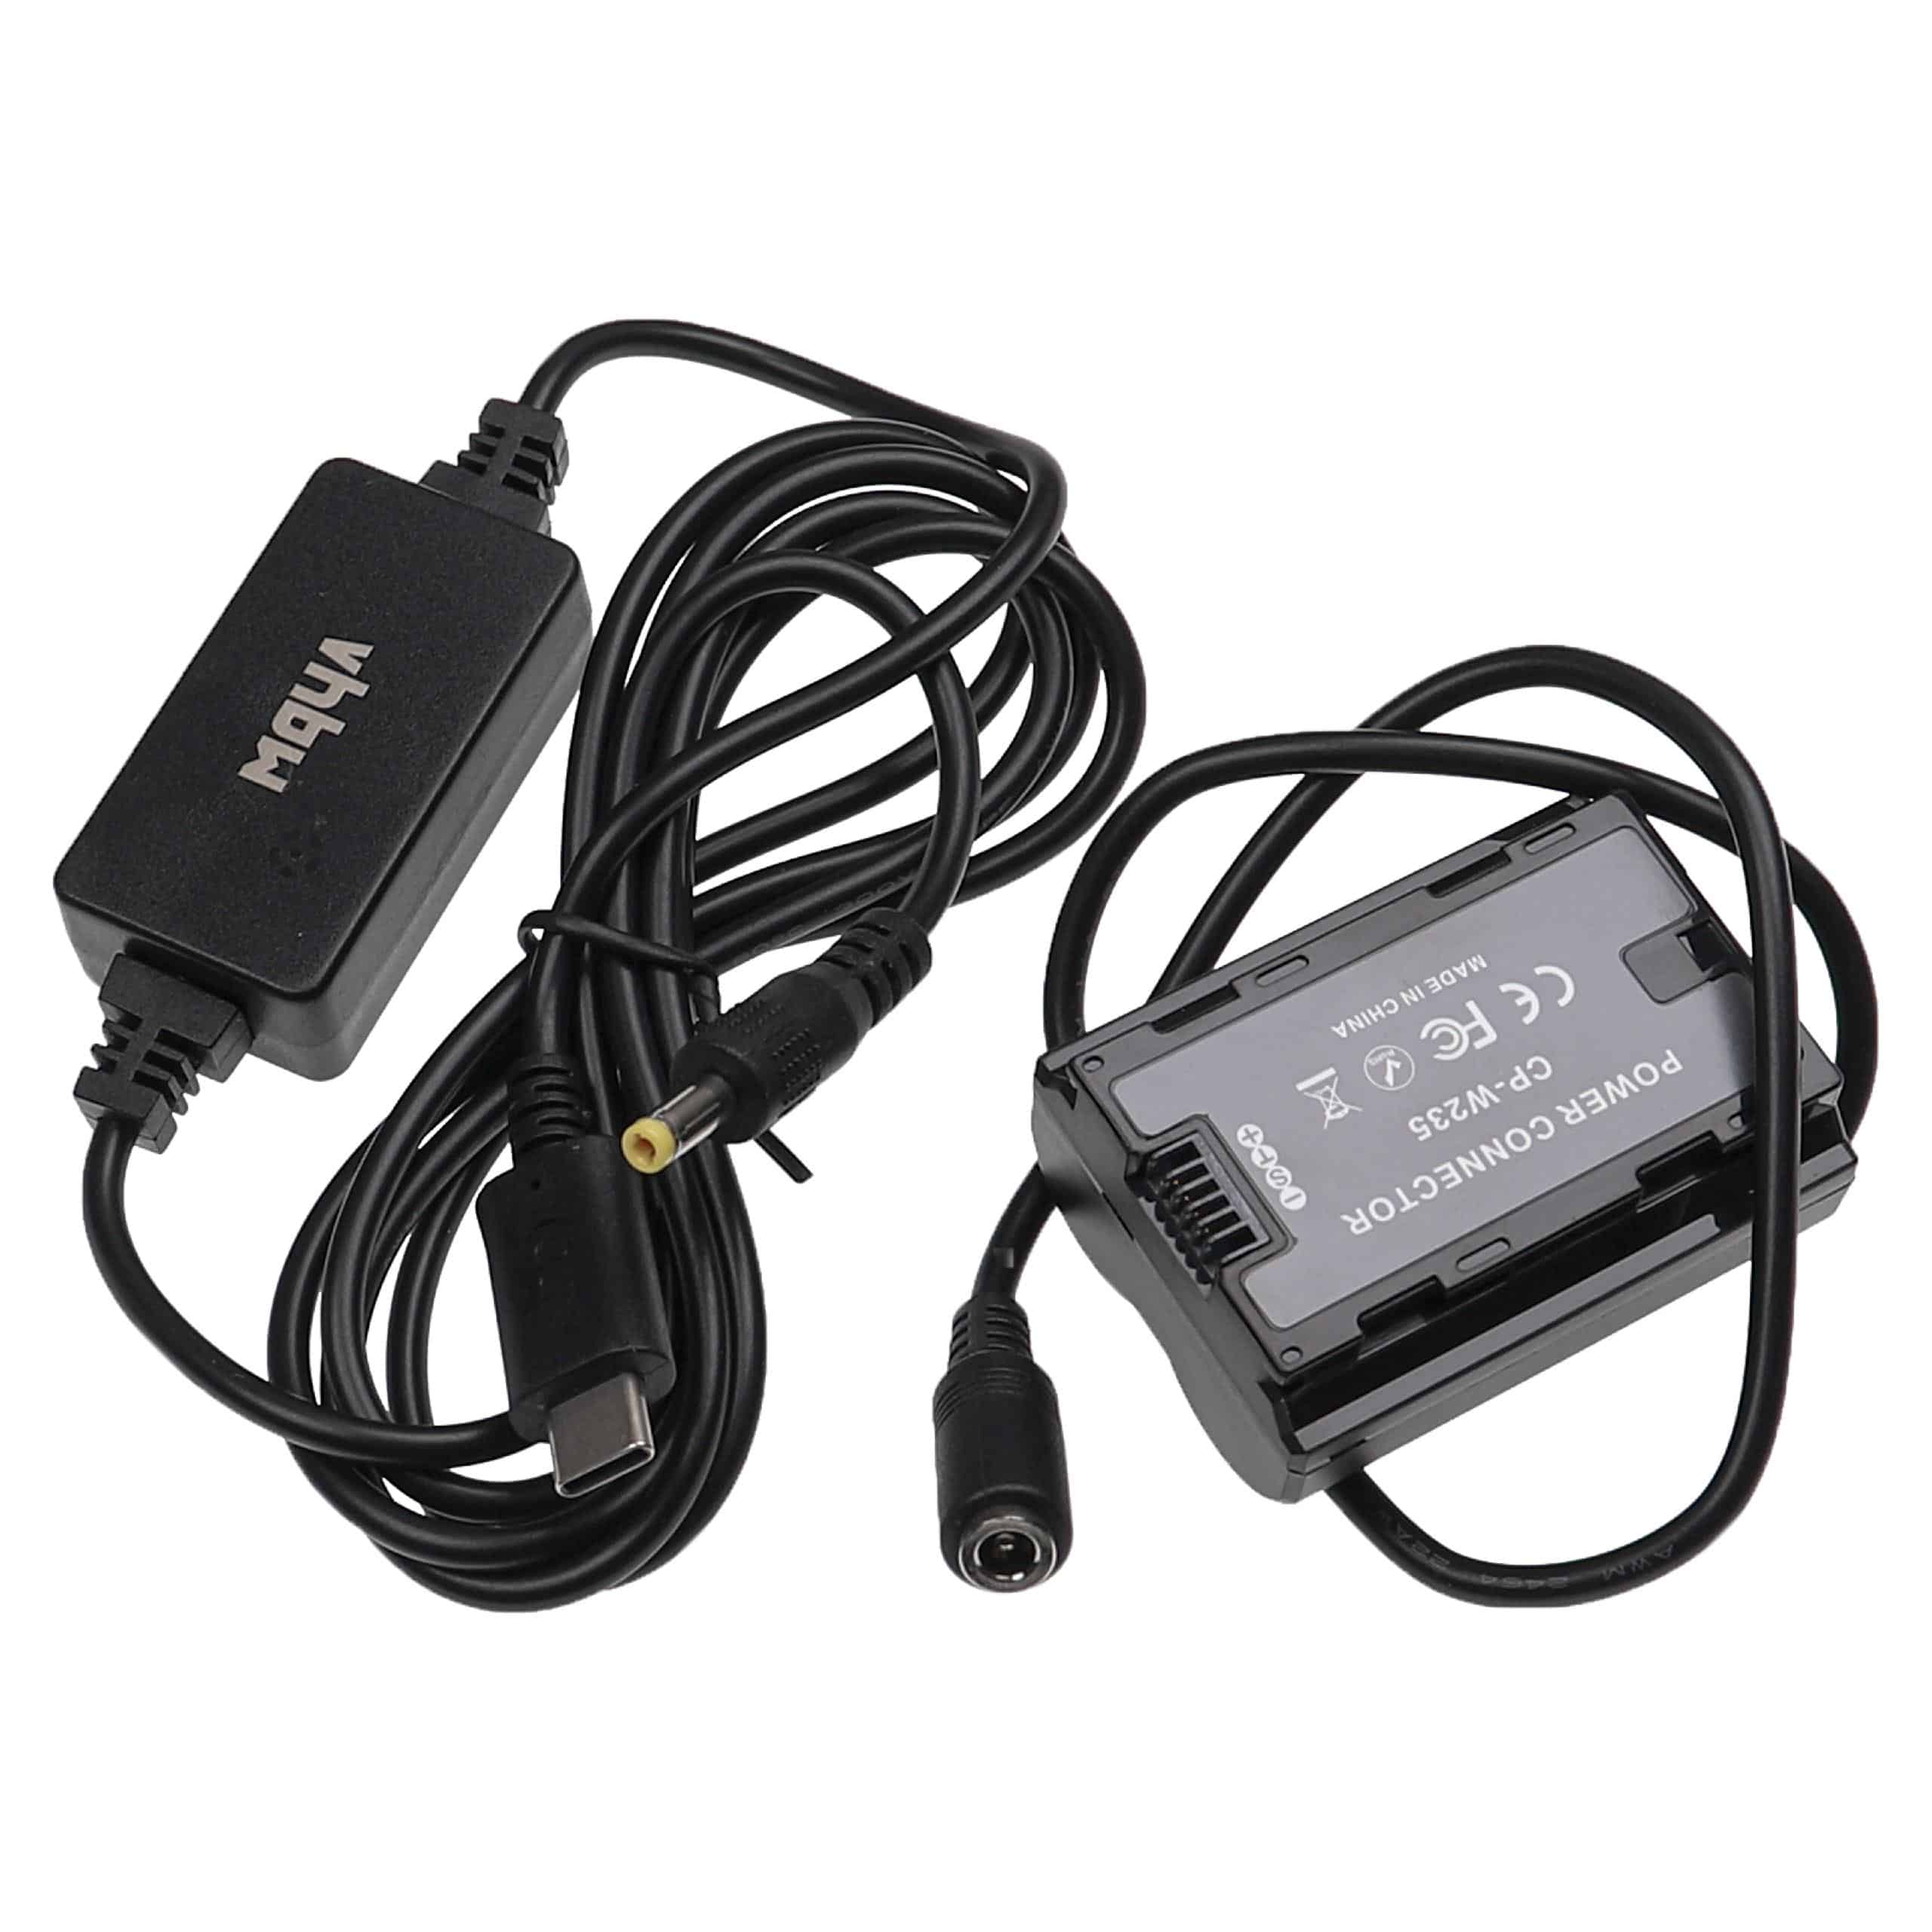 USB Power Supply replaces for Fujifilm Camera + DC Coupler as Fujifilm CP-W235 - 2 m, 9 V 3.0 A